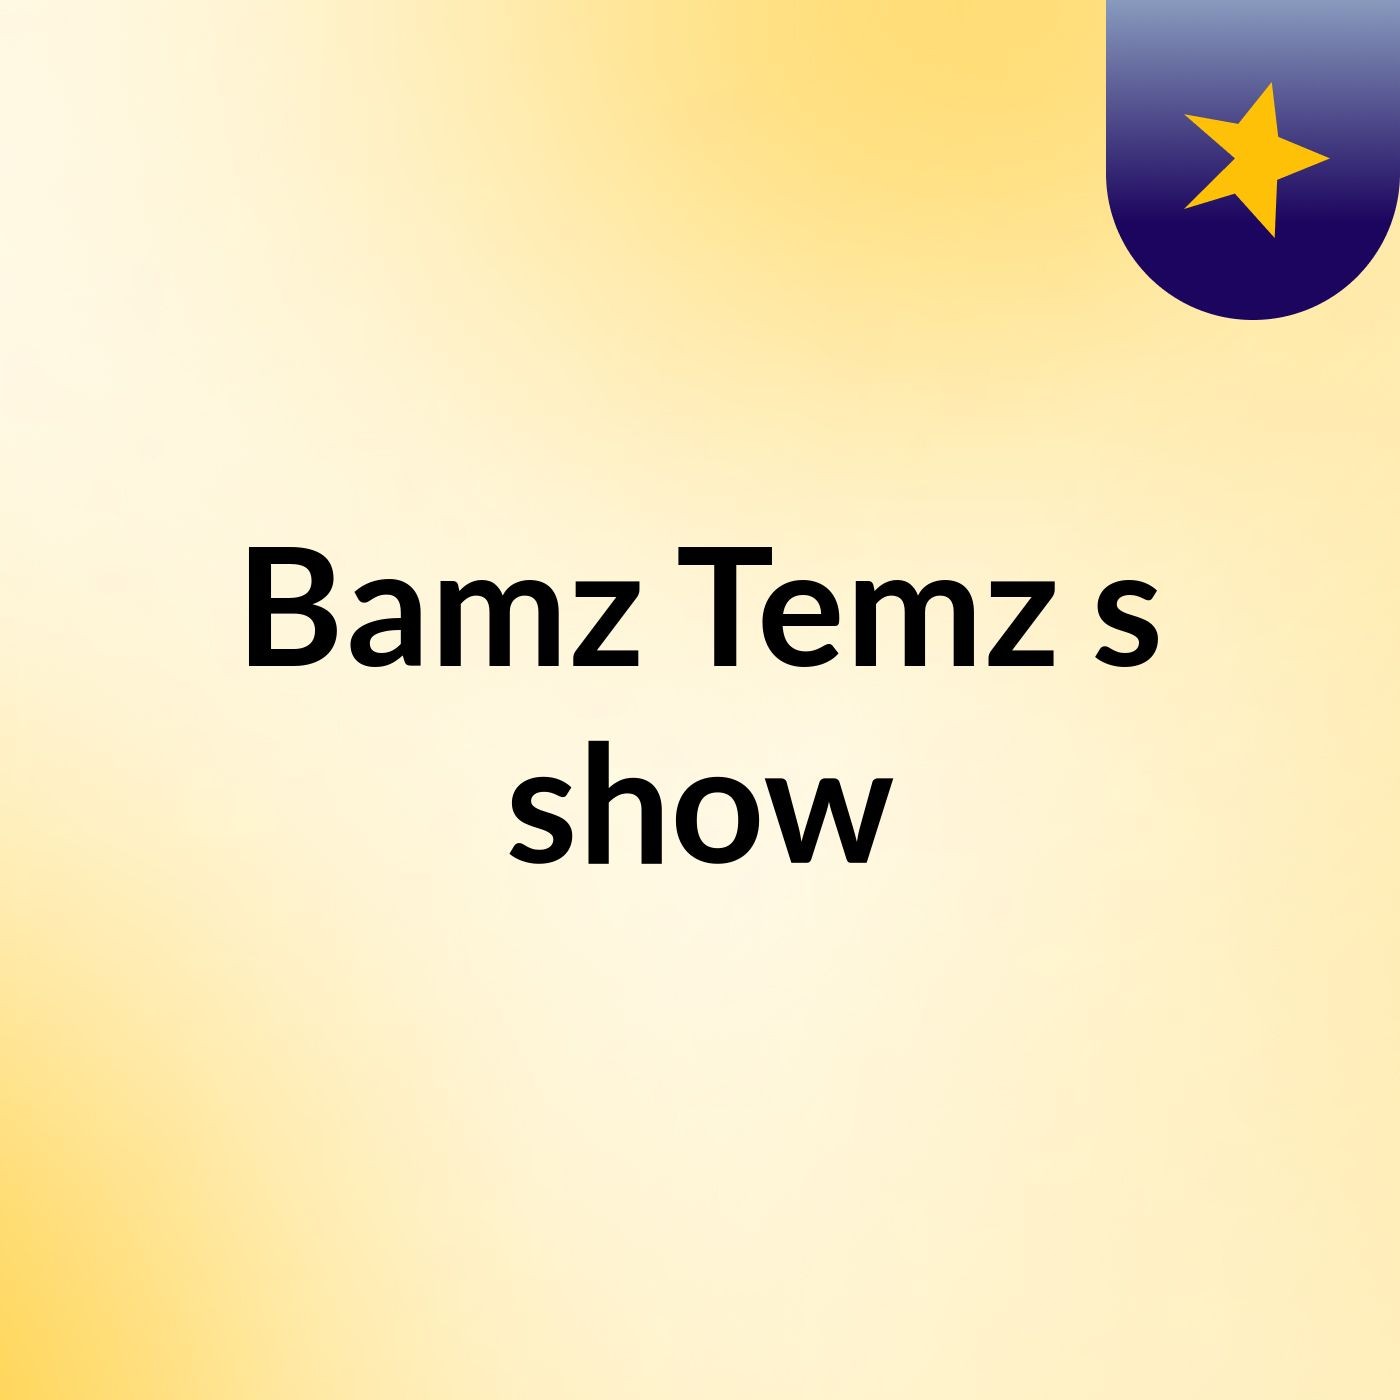 Bamz Temz's show